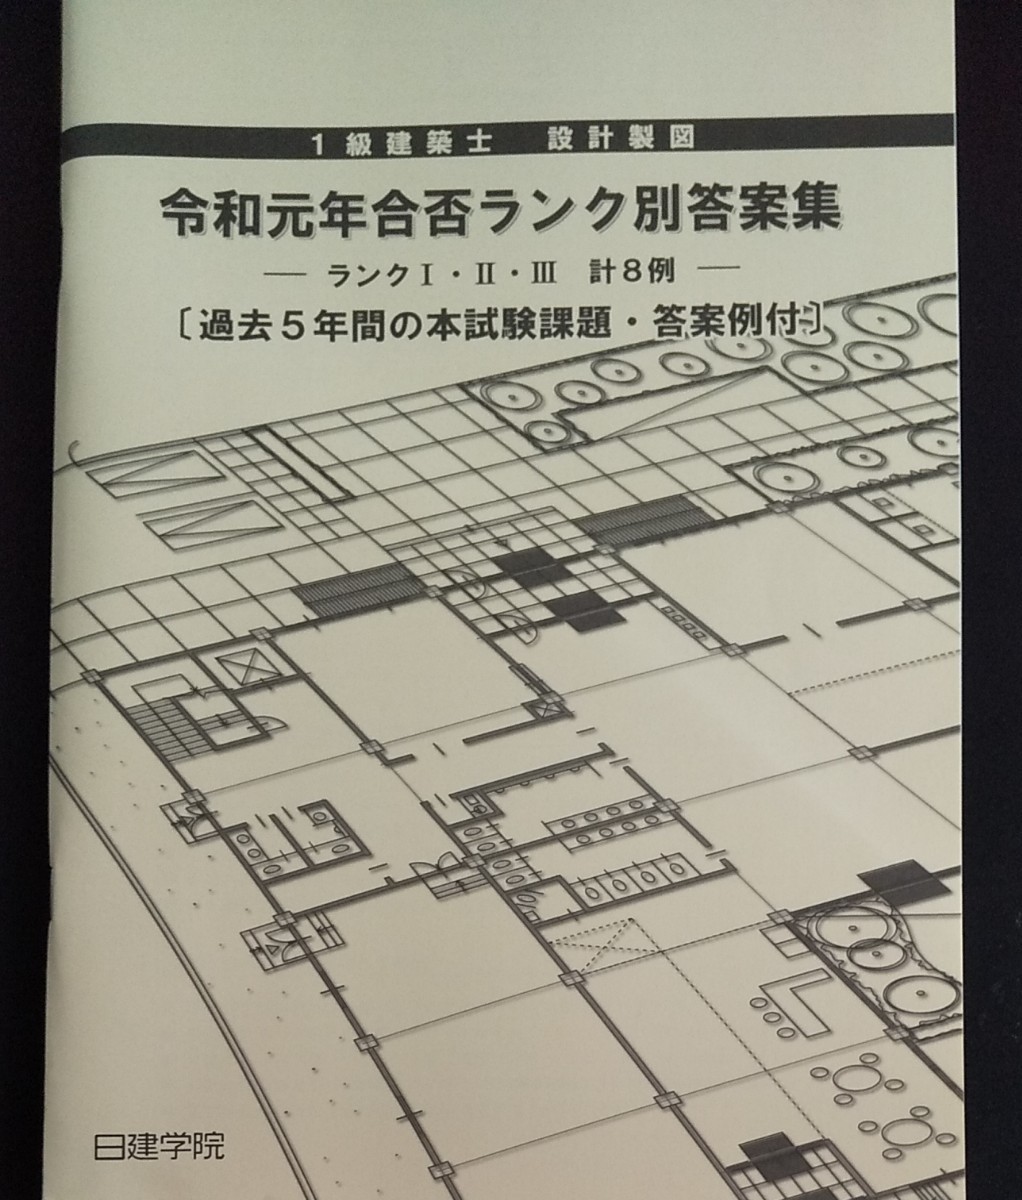 一級建築士 設計製図 令和元年ランク別答案集  1級建築士 二次試験 2019年版